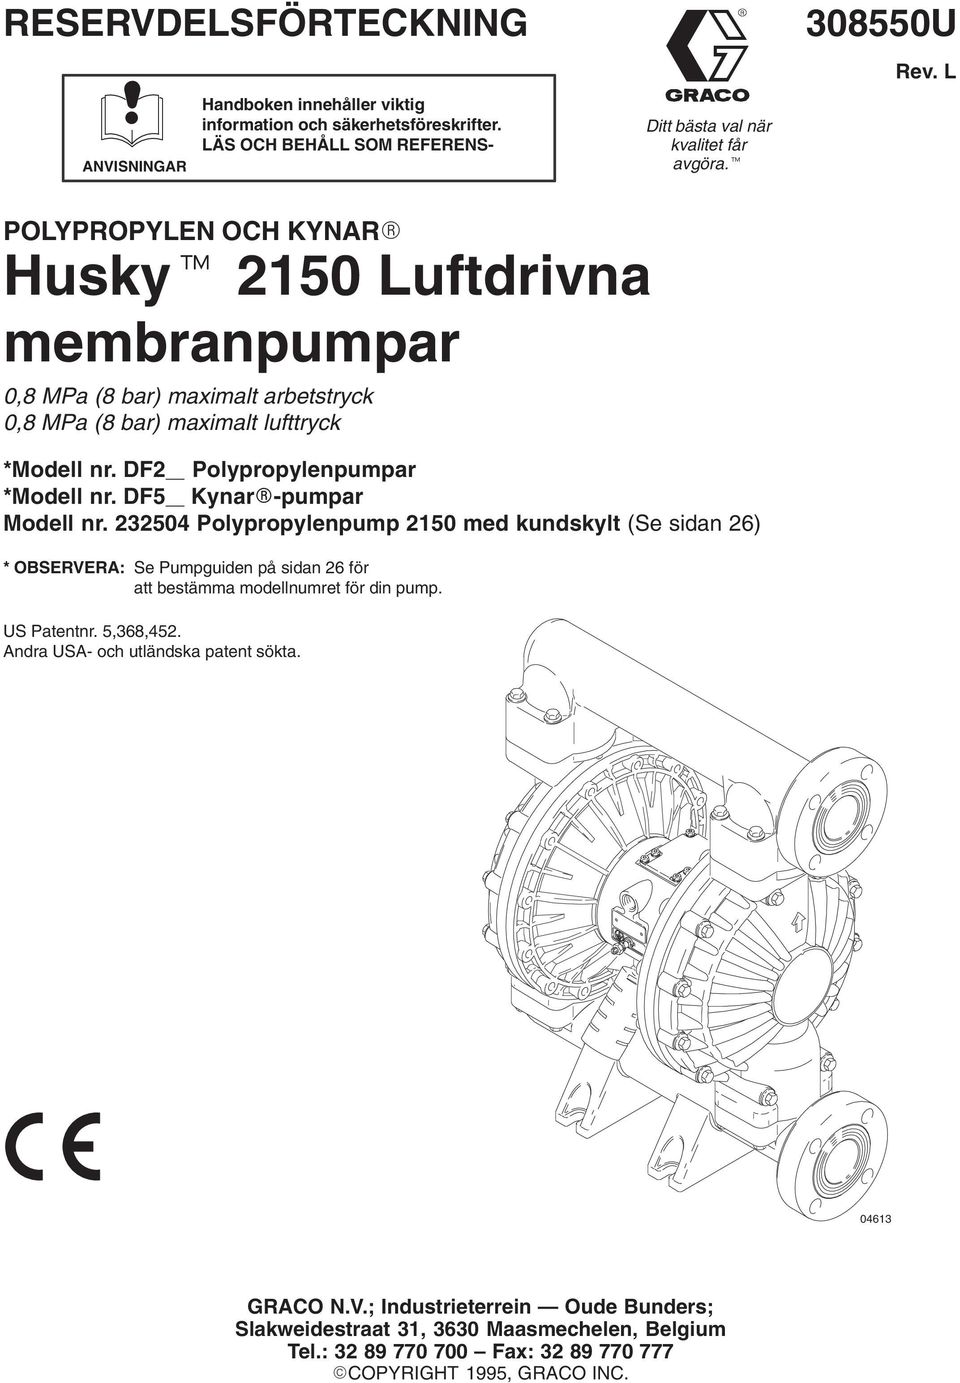 DF5 Kynar-pumpar Modell nr. 3504 Polypropylenpump 50 med kundskylt (Se sidan 6) * OBSERVERA: Se Pumpguiden på sidan 6 för att bestämma modellnumret för din pump. US Patentnr. 5,368,45.